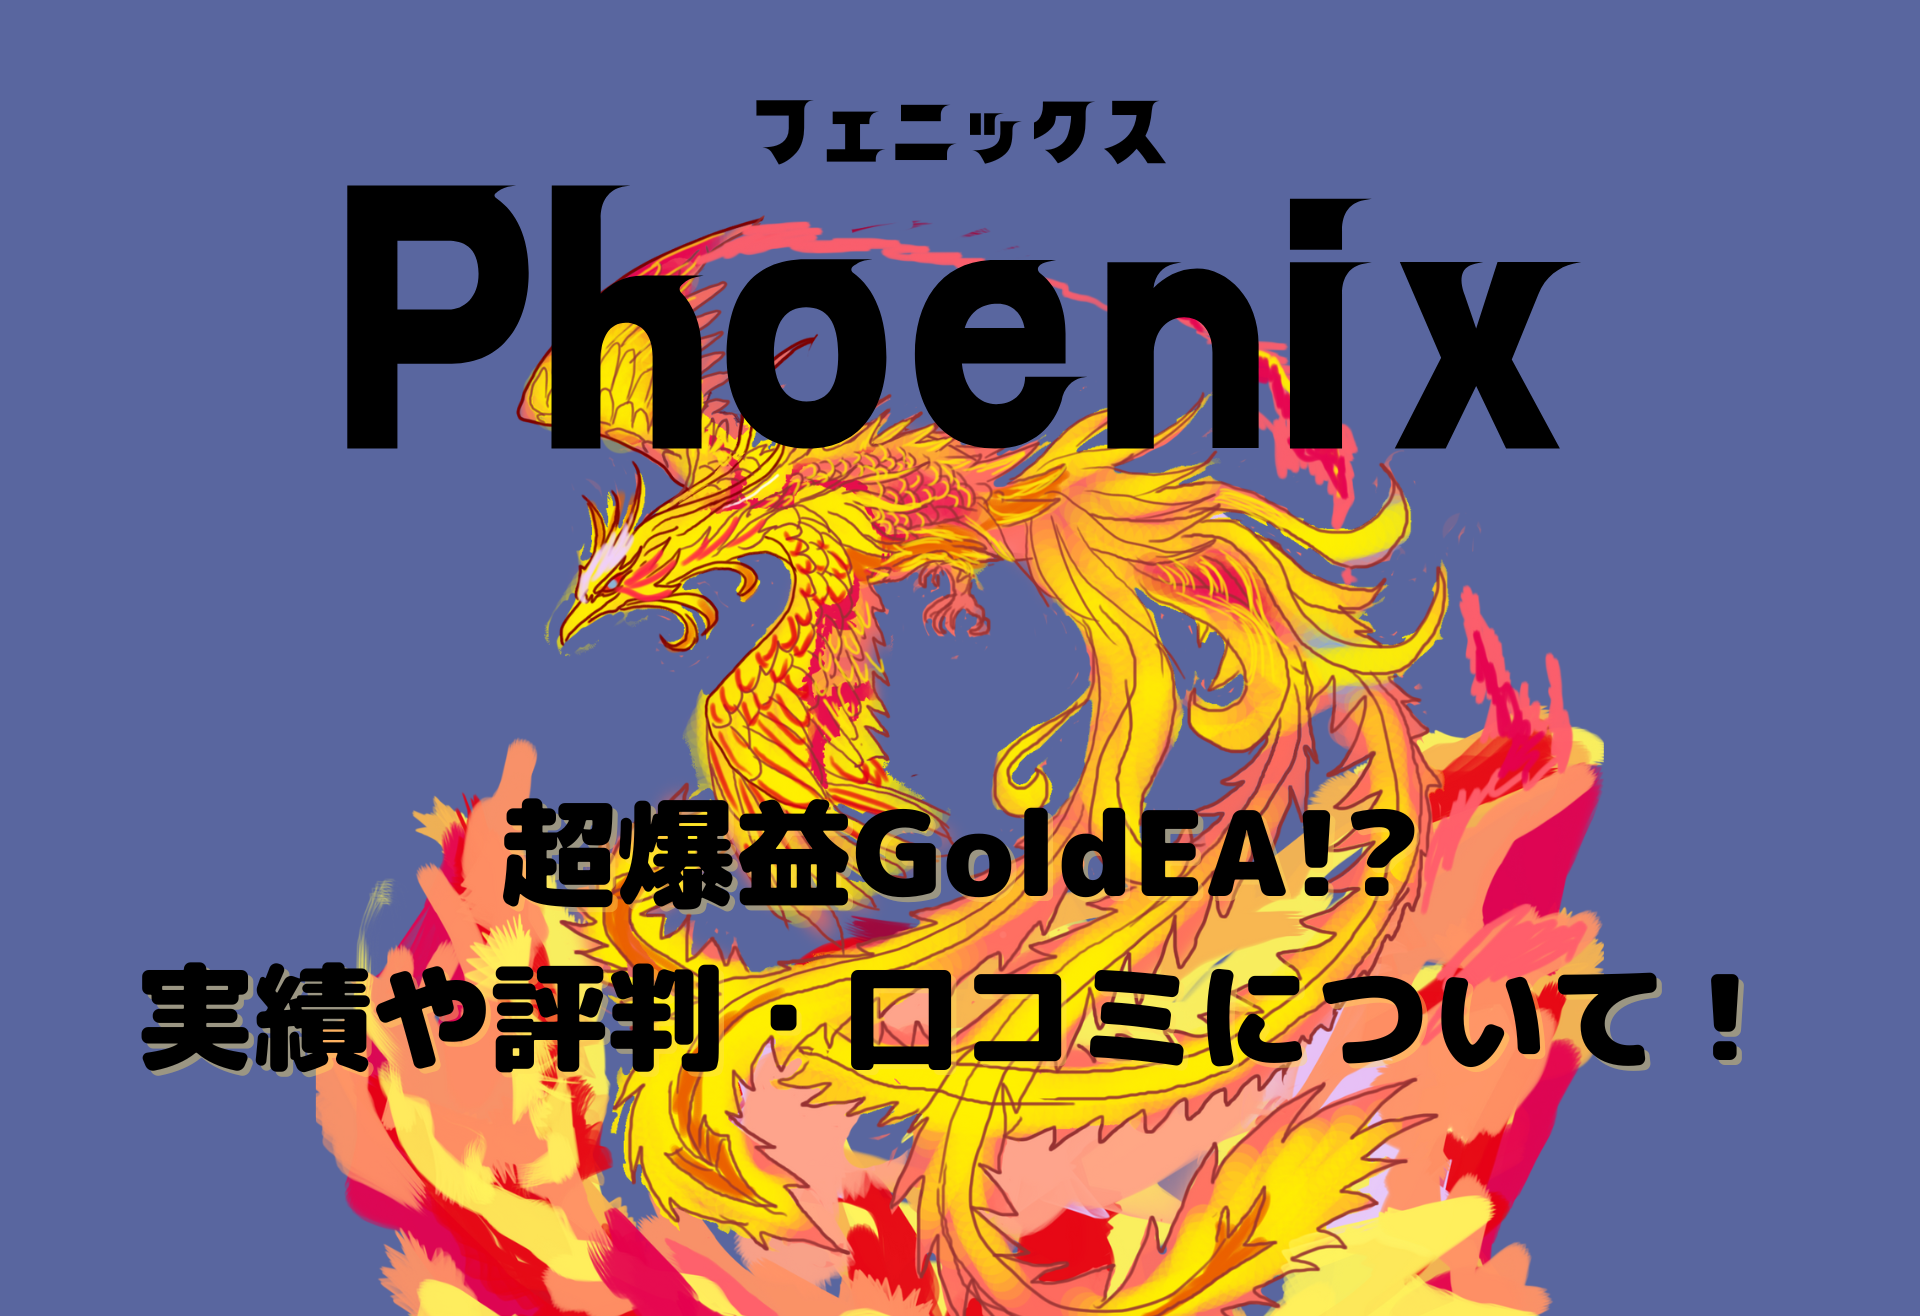 【FX自動売買EA】フェニックス(Phoenix)の実績や評判・口コミは?超爆益GoldEAの仕様や詳細について紹介!